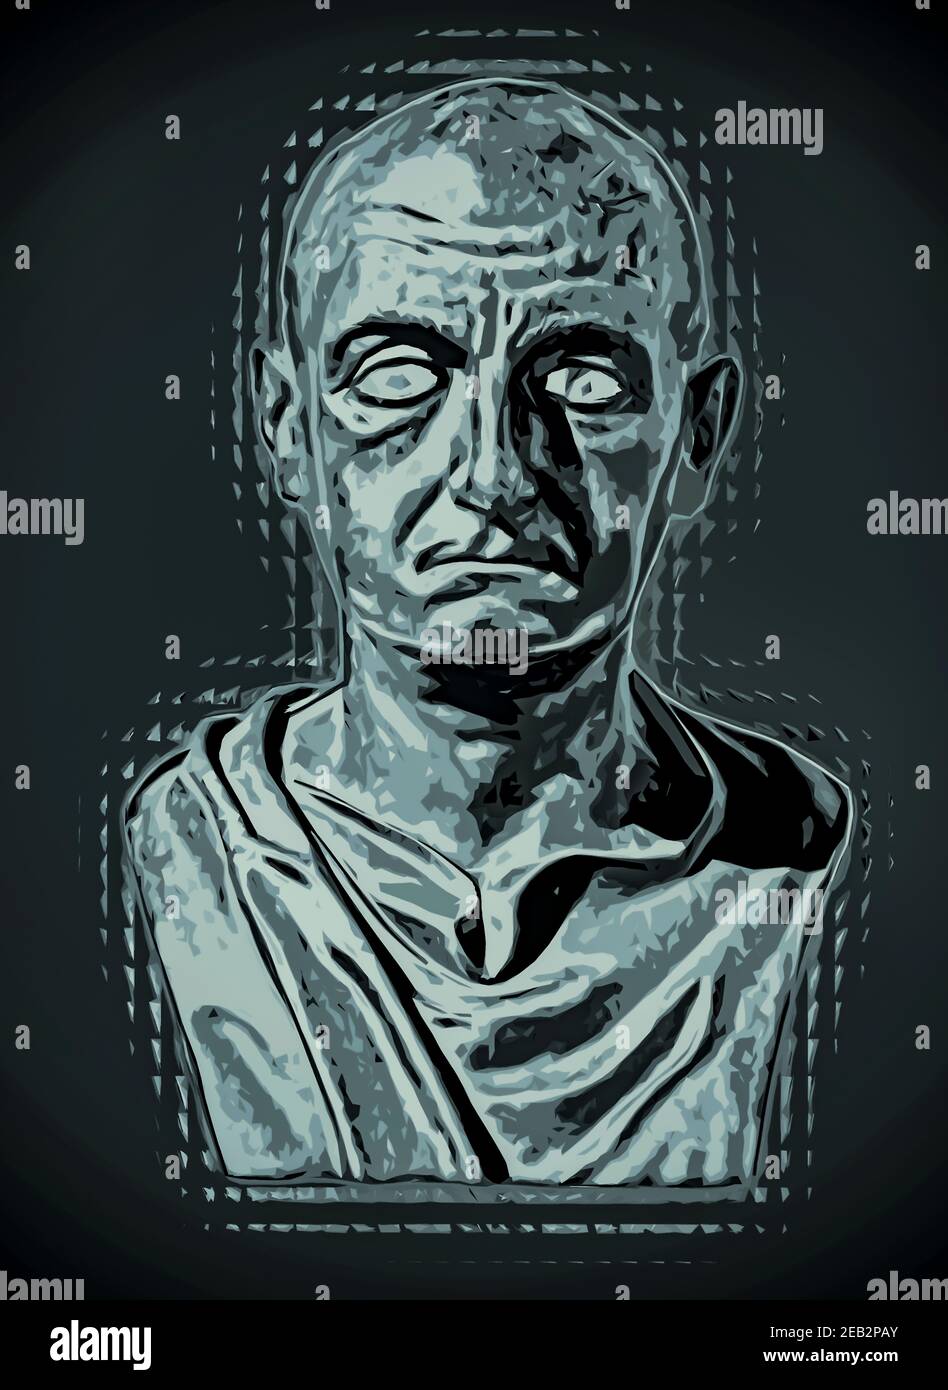 Busto del generale romano Scipio Africanus famose guerre di combattimento nel 200 a.C. con Annibale A. questa è la fotografia manipolata da mezzi misti. Foto Stock